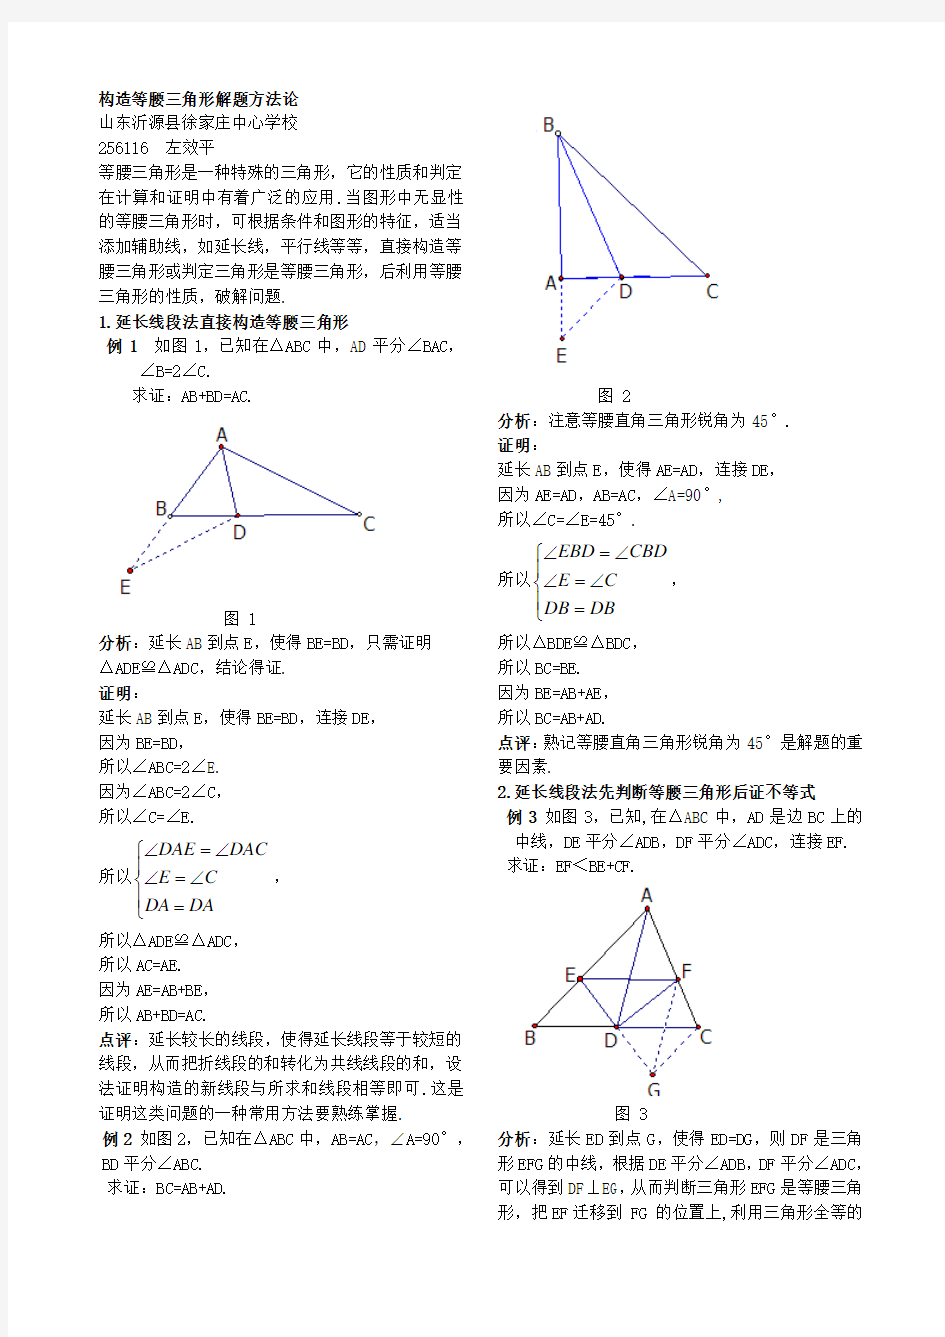 构造等腰三角形解题方法论